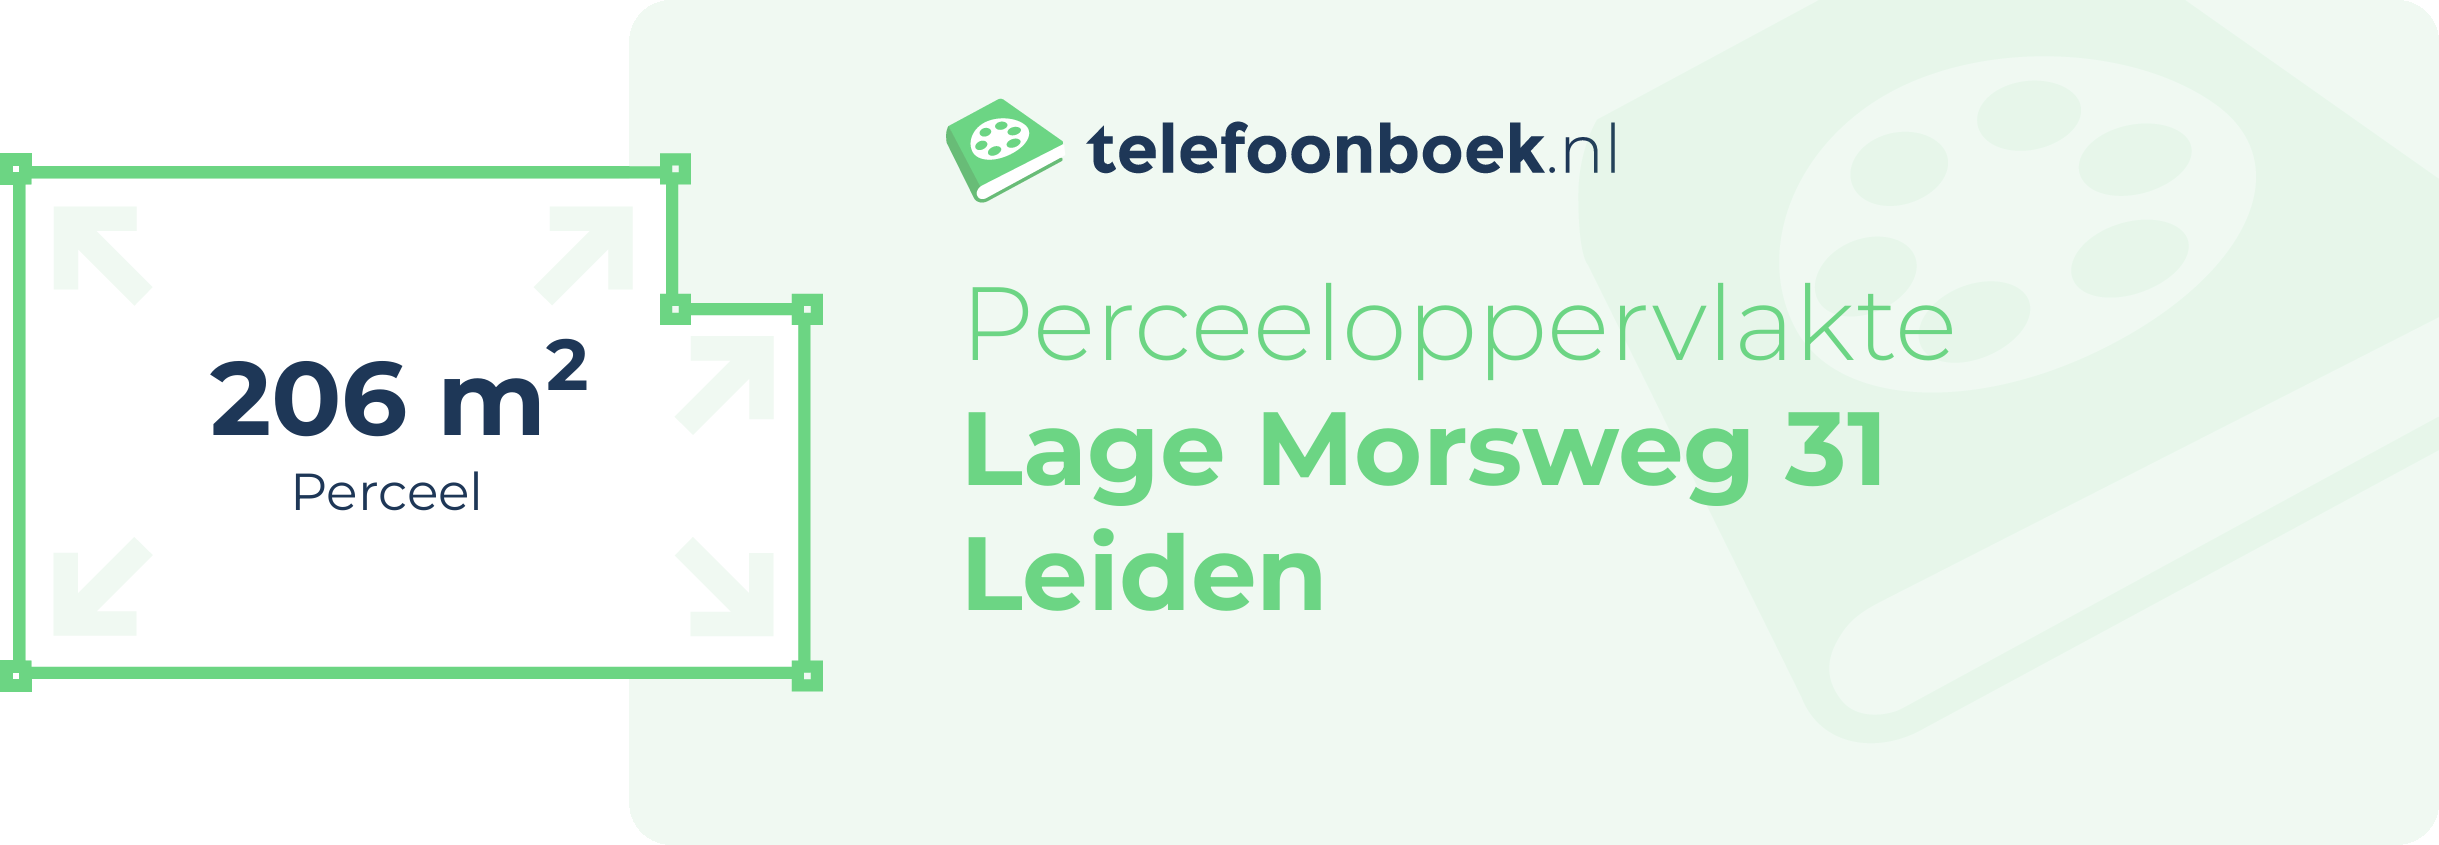 Perceeloppervlakte Lage Morsweg 31 Leiden